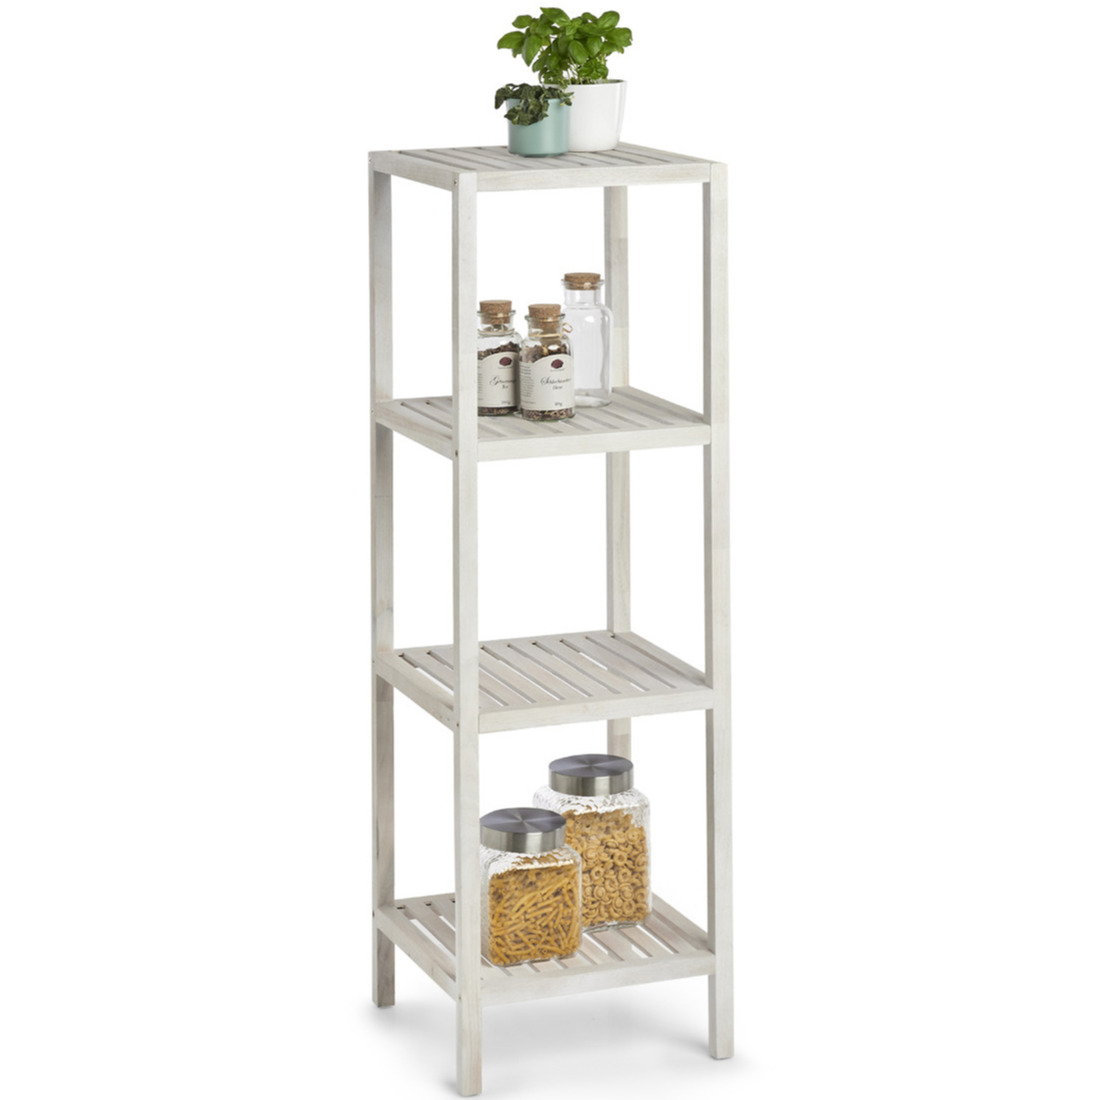 Bijzet kastje wit met 4 open planken 36 x 112 cm - Zeller - Woondecoratie - Keuken/badkamer accessoires/benodigdheden - Bijzetkastjes - Open kastjes met planken